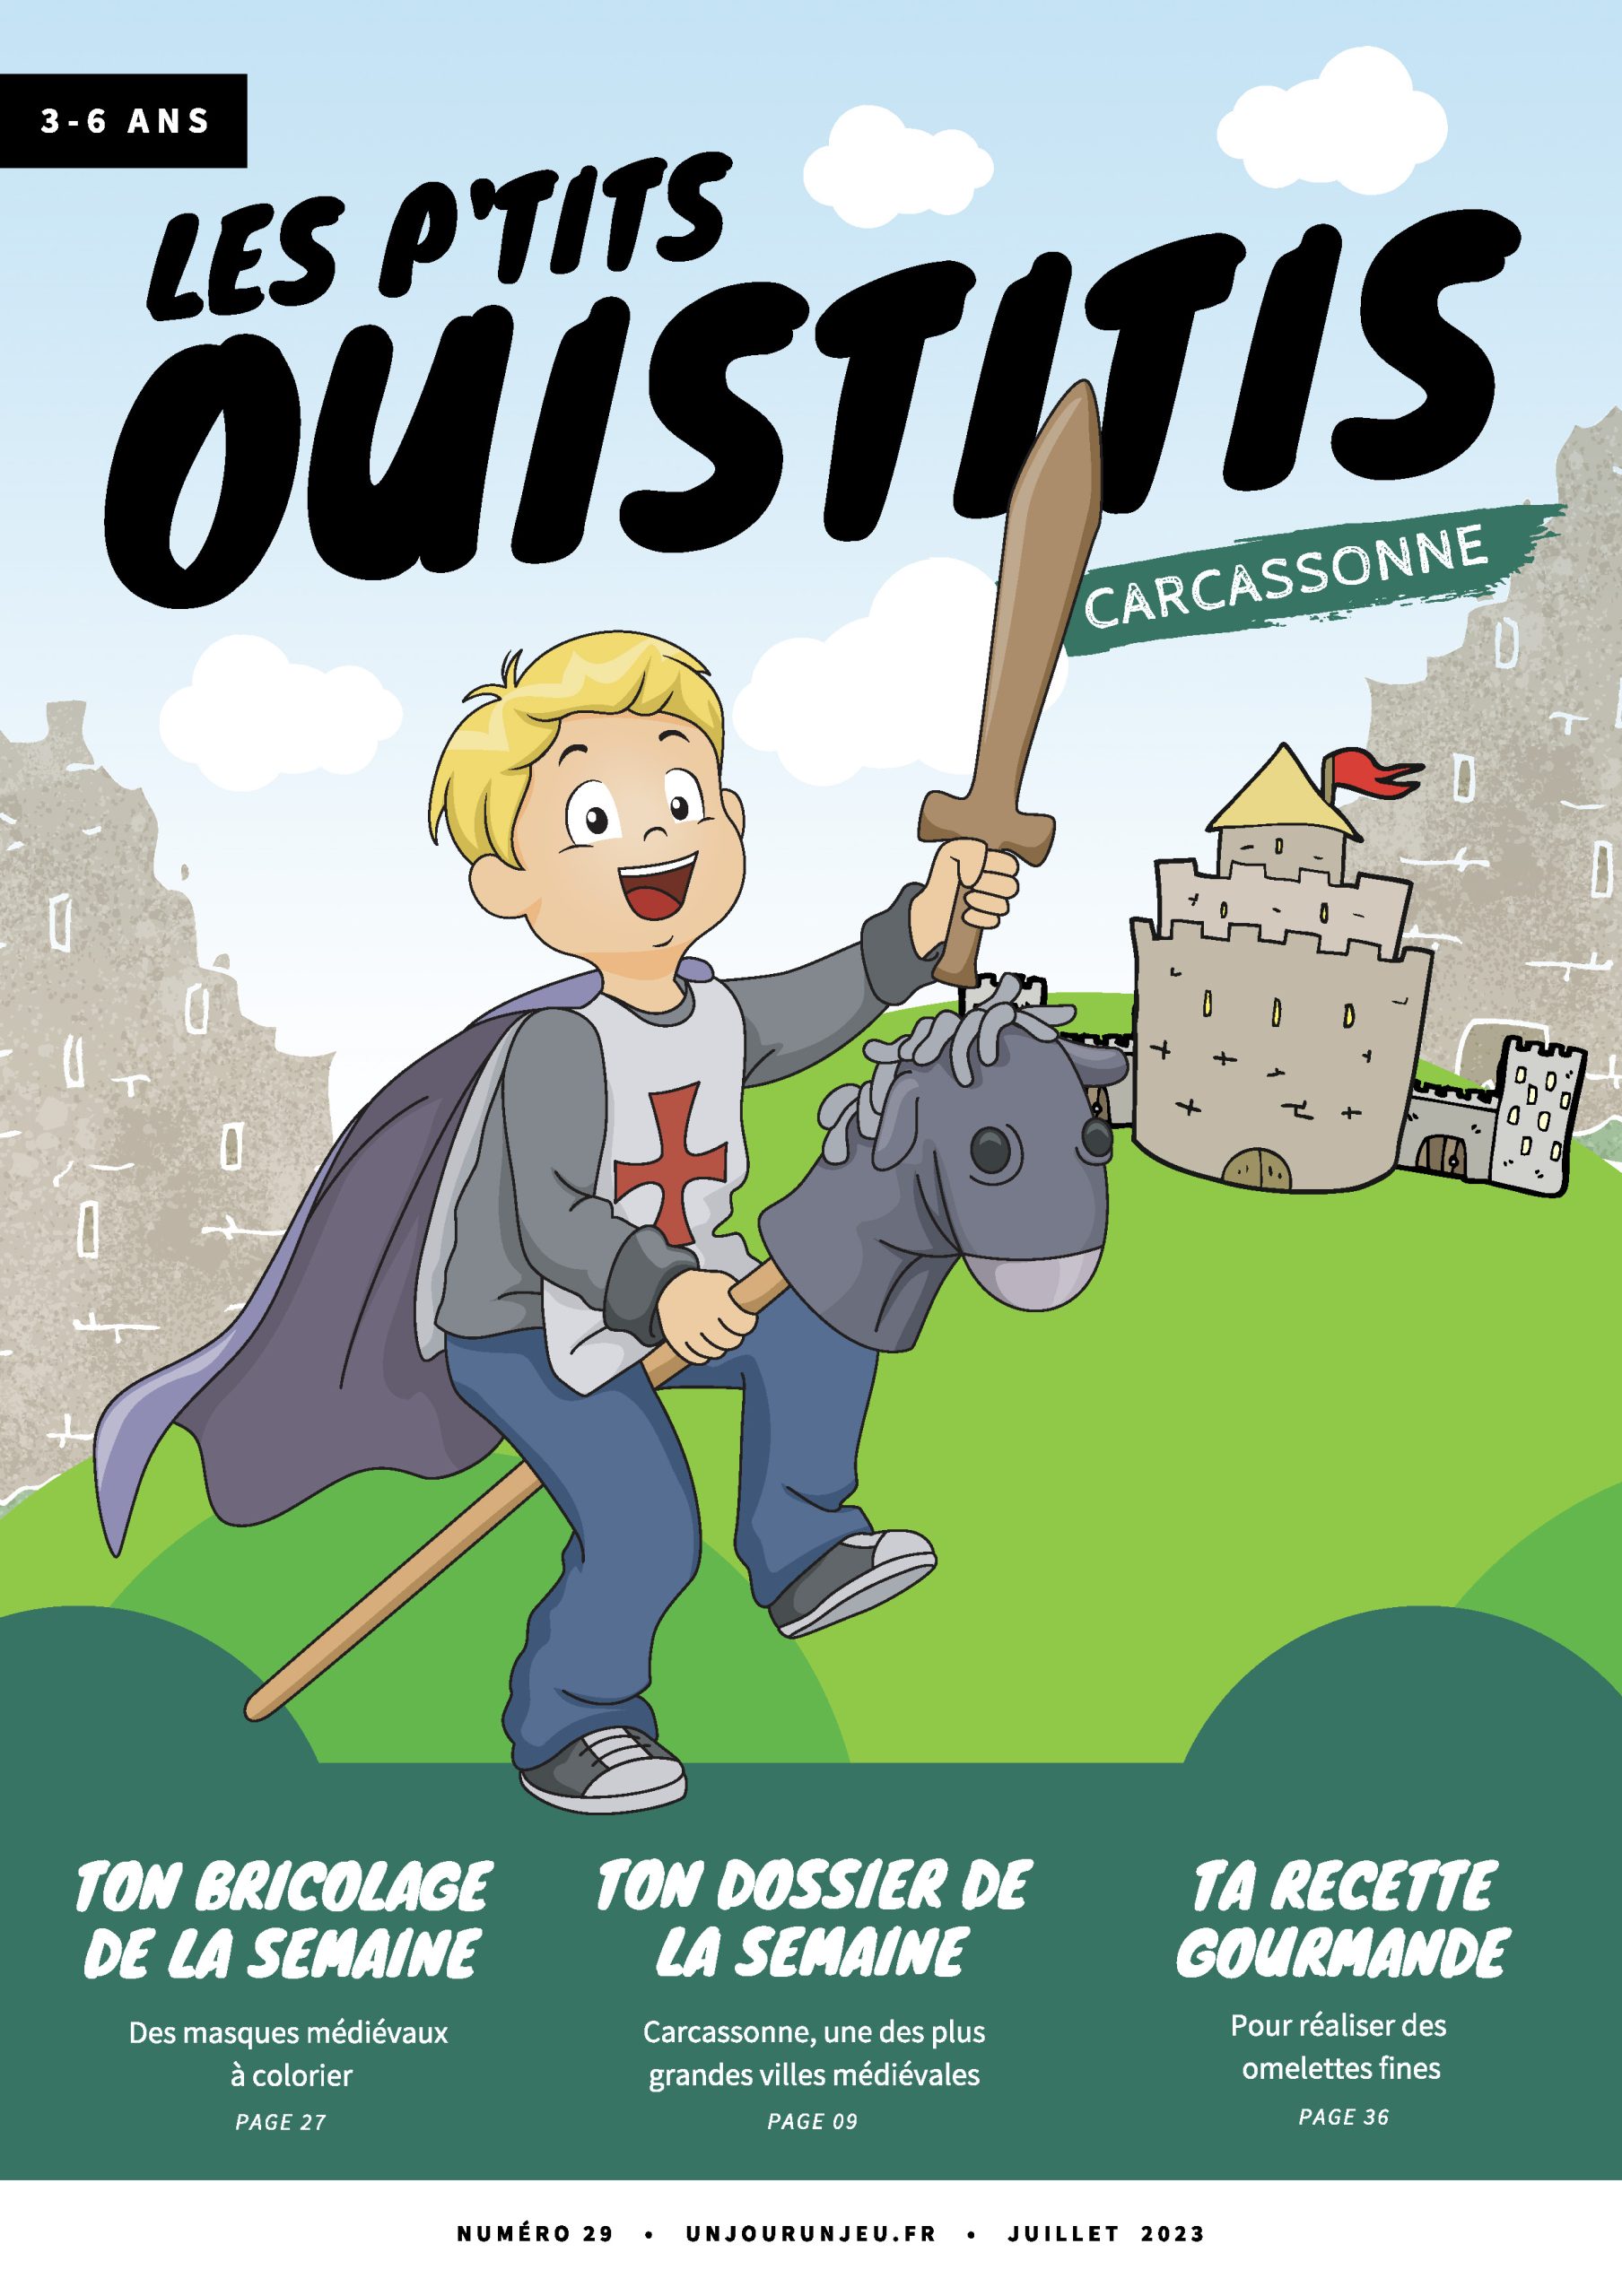 Les P'tits Ouistitis explore la cité de Carcassonne